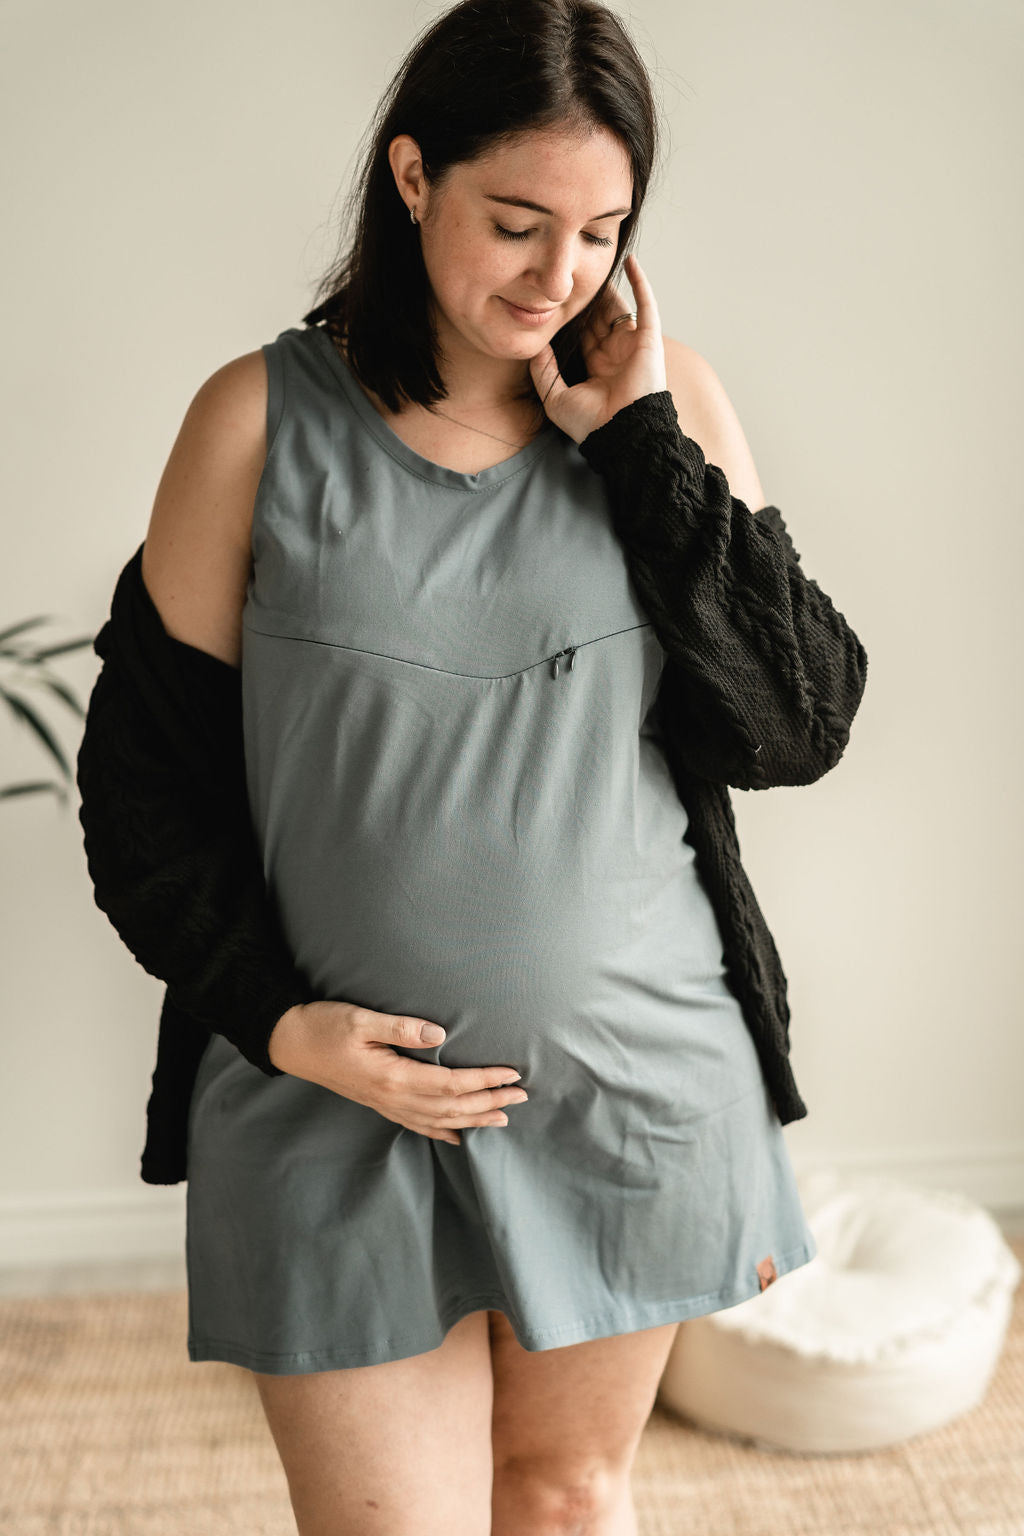 Maman enceinte Robe camisole bleu gris 3 en 1 maternité, allaitement et postpartum Nine Clothing